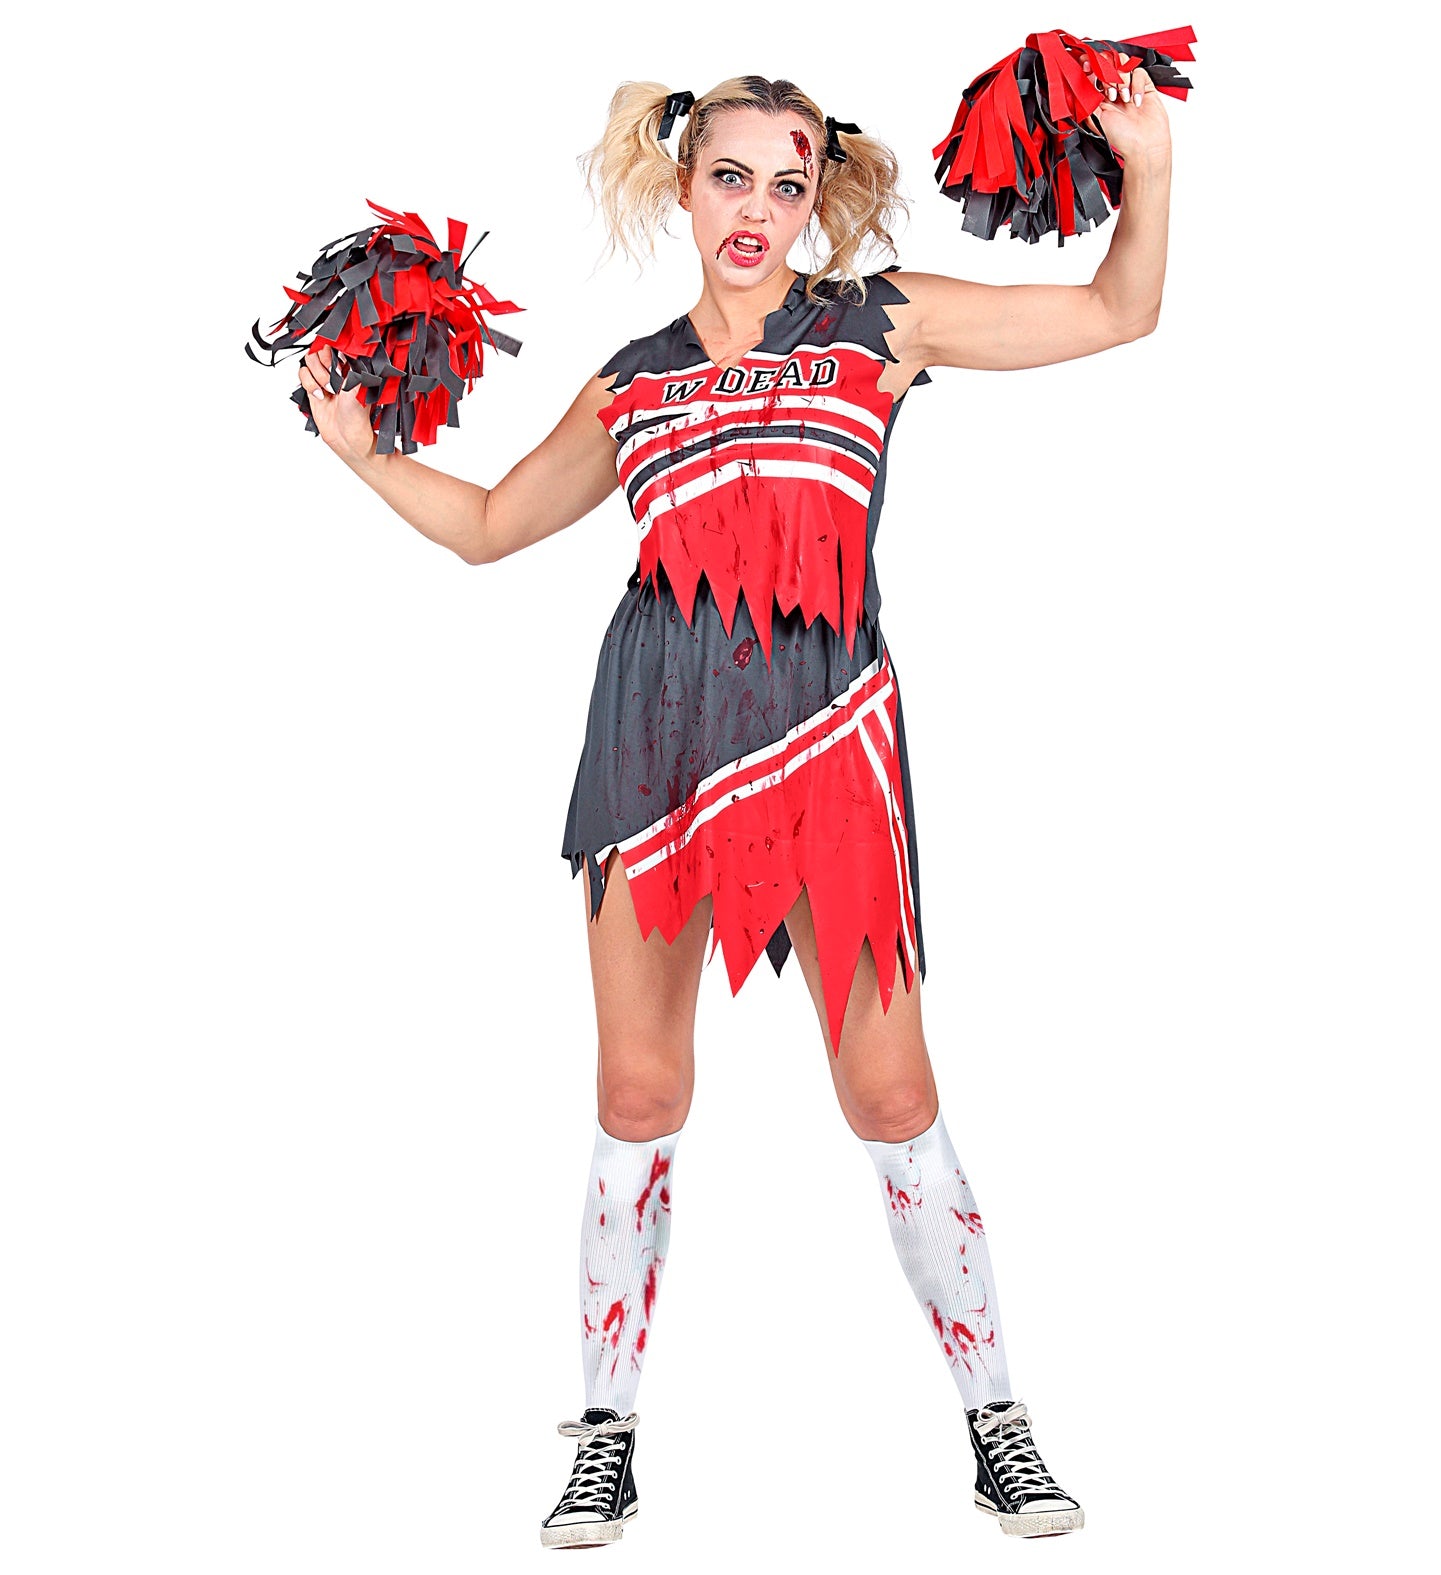 Zombie Dead Cheerleader Costume Adult